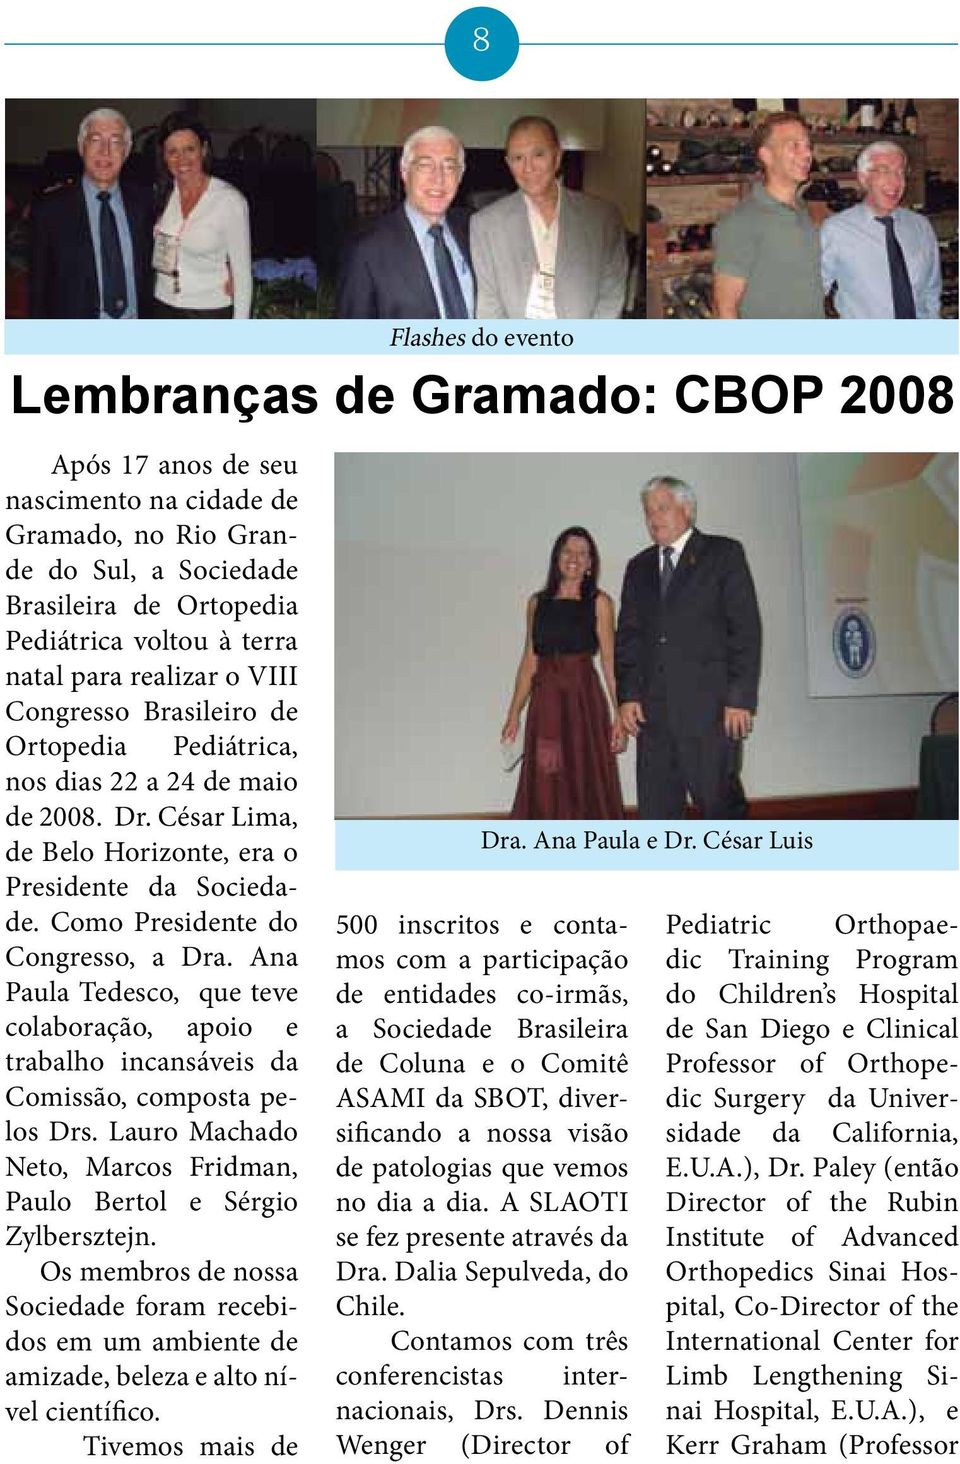 Ana Paula Tedesco, que teve colaboração, apoio e trabalho incansáveis da Comissão, composta pelos Drs. Lauro Machado Neto, Marcos Fridman, Paulo Bertol e Sérgio Zylbersztejn.